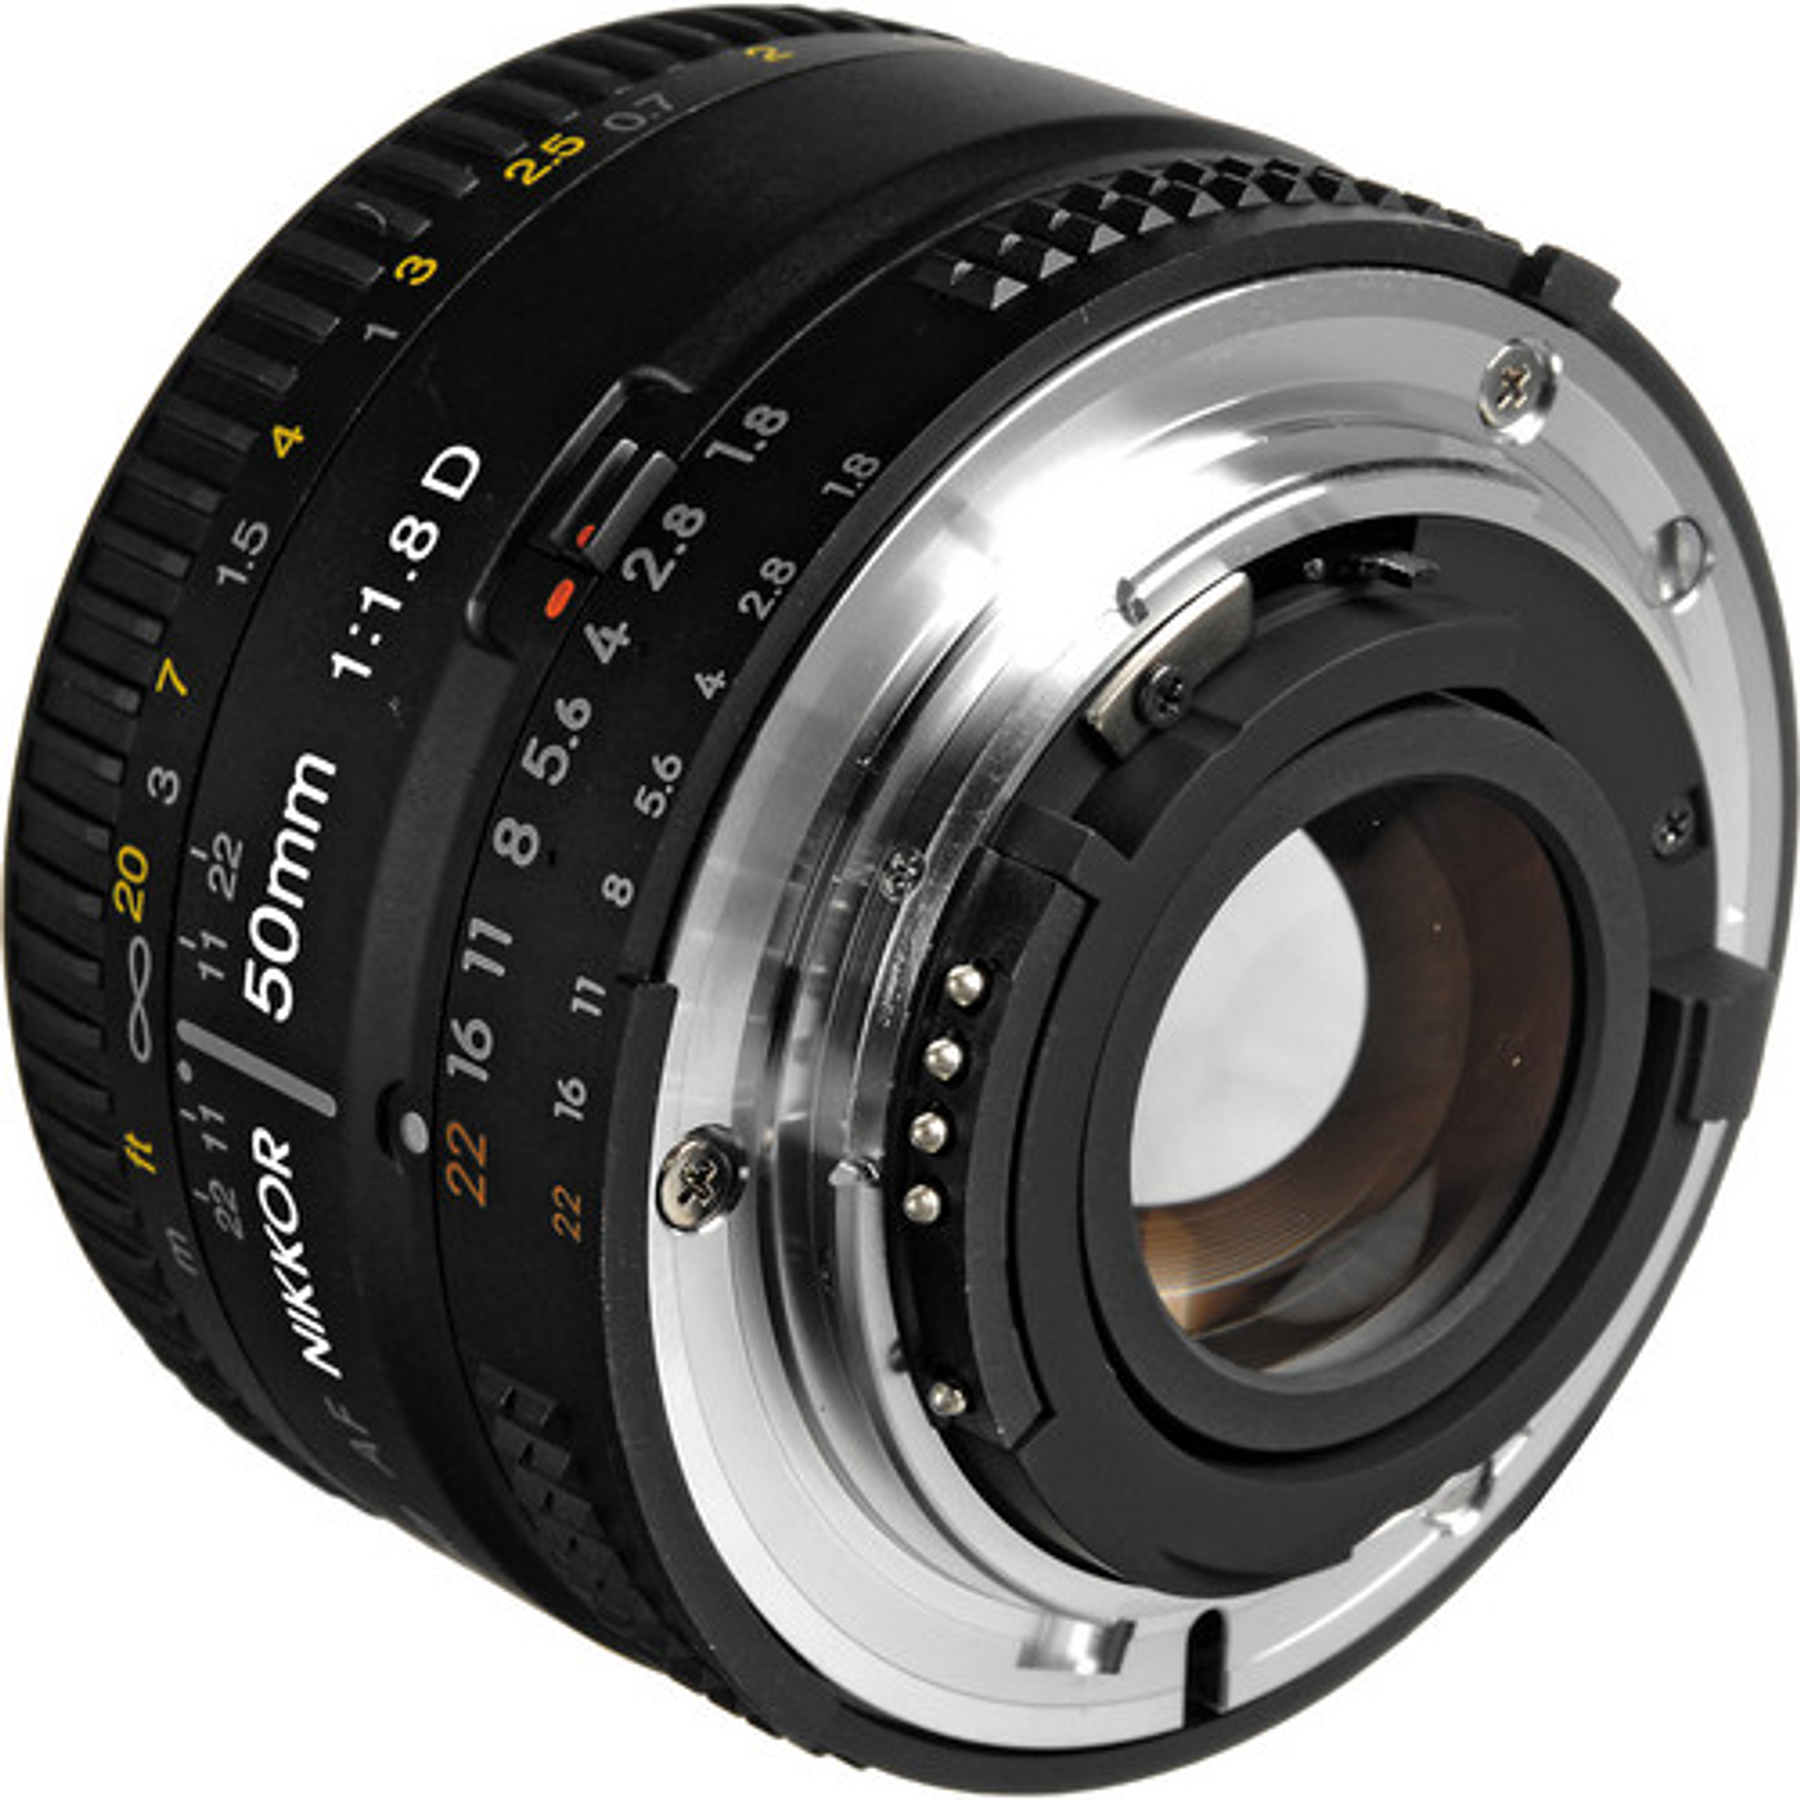 Nikon F AF 50mm f1.8D (r)